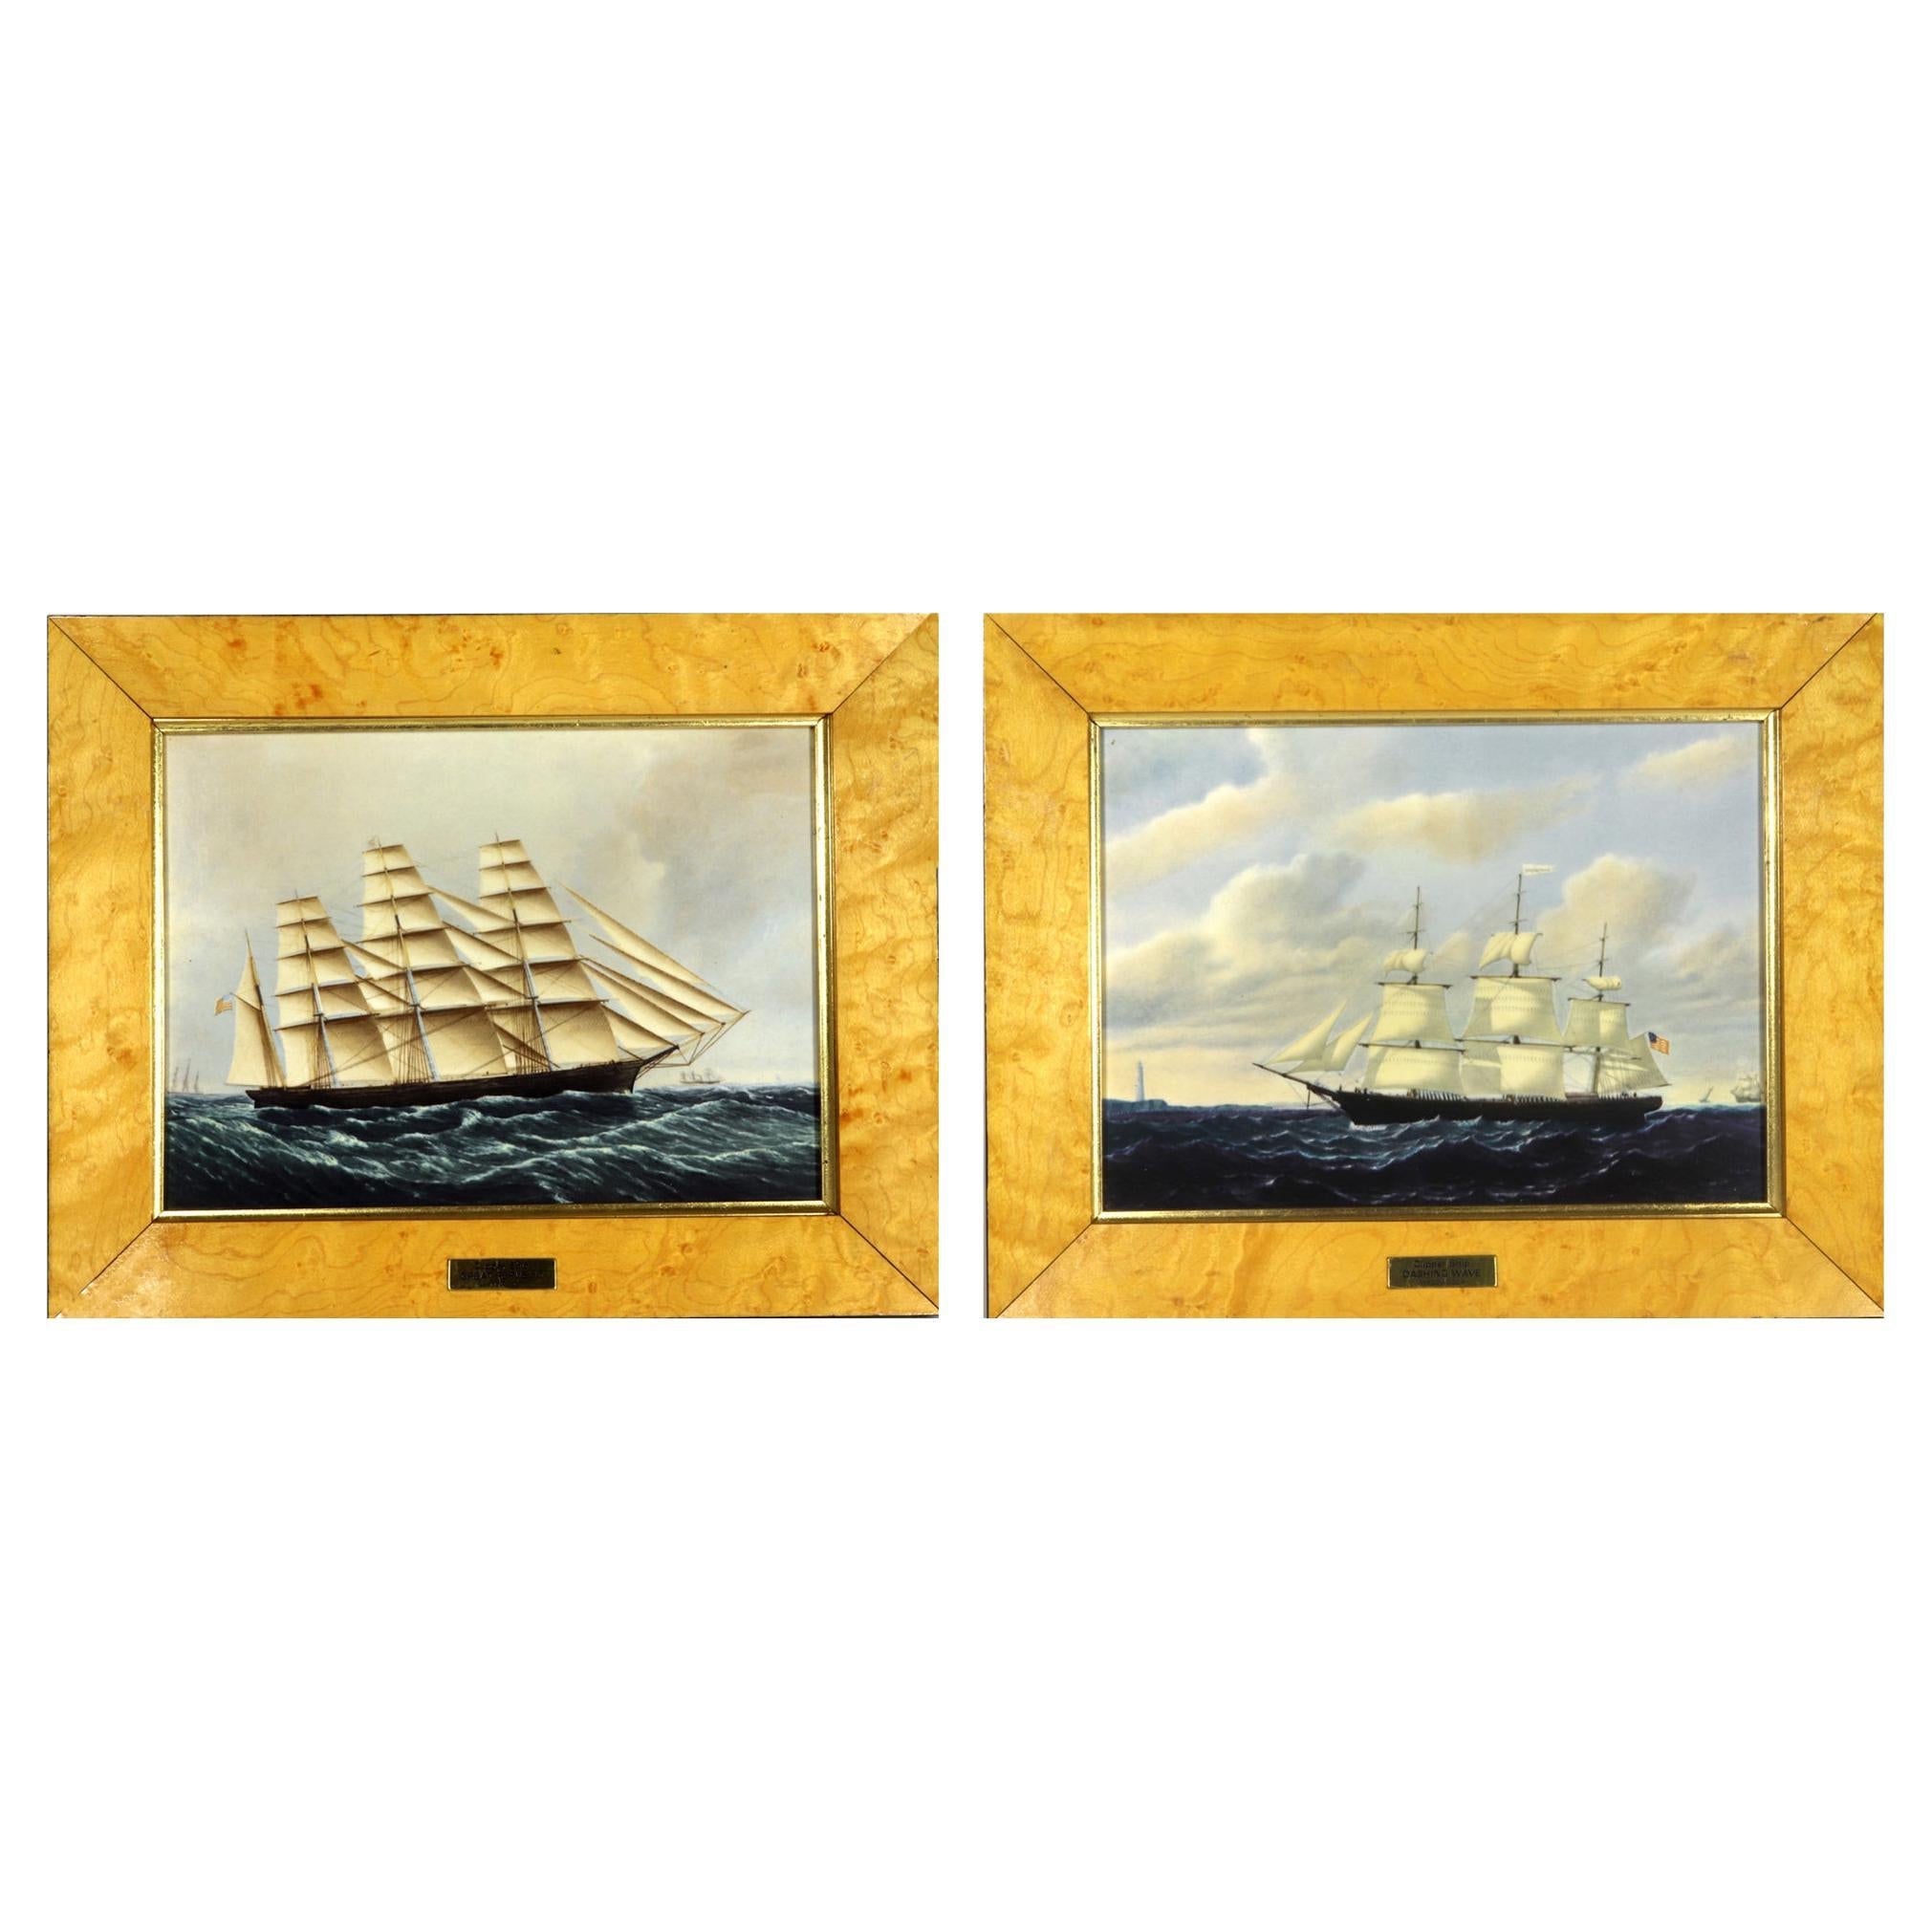 Porzellanplaketten der Schiffe „The Great Republic and The Dashing Wave“ von Wedgwood